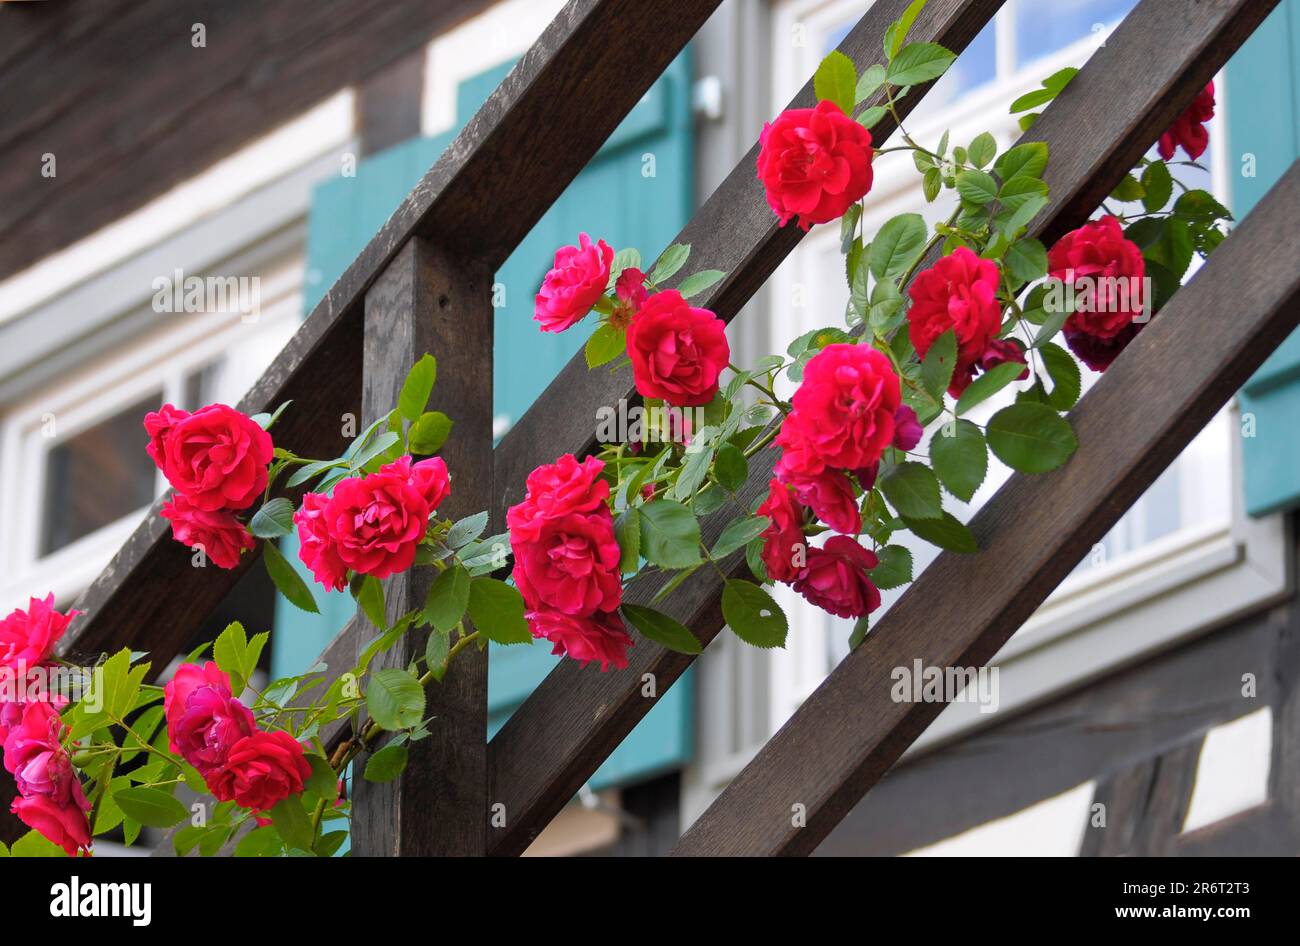 Nel Monastero di Maulbronn, rose rampicanti rosse, sulla ringhiera delle scale Foto Stock